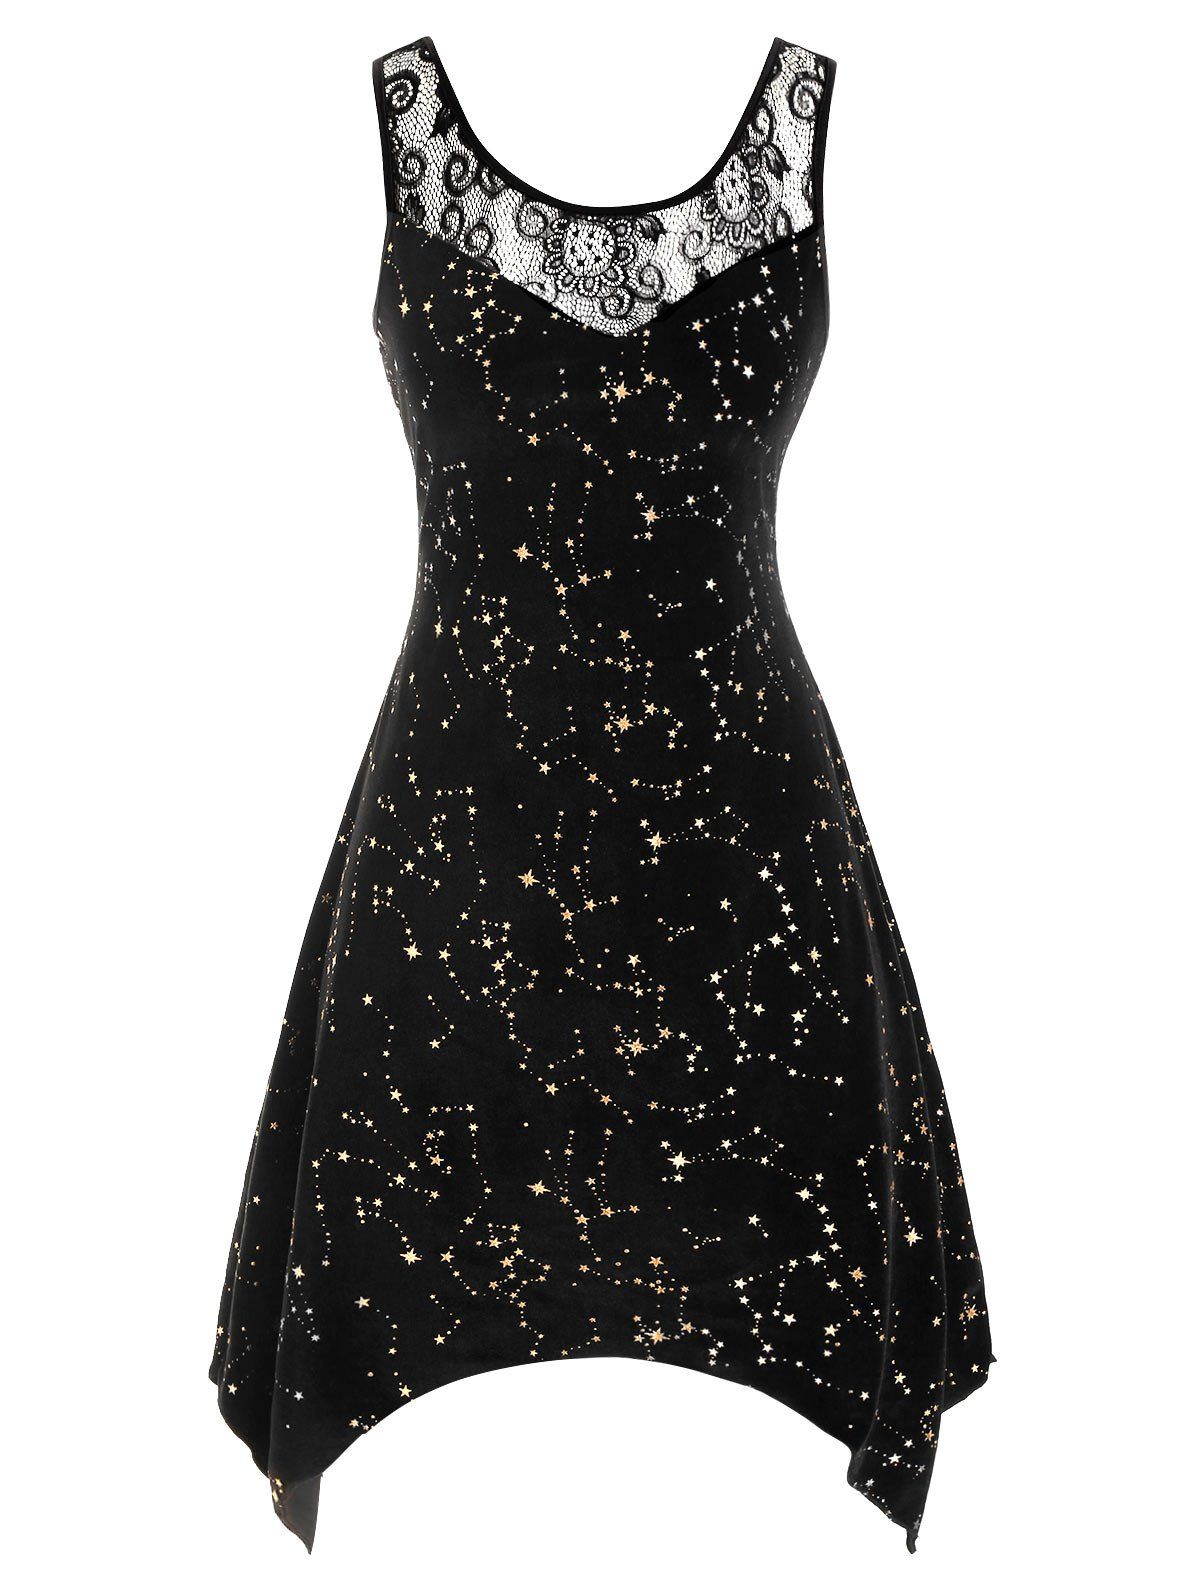 velvet dress with stars